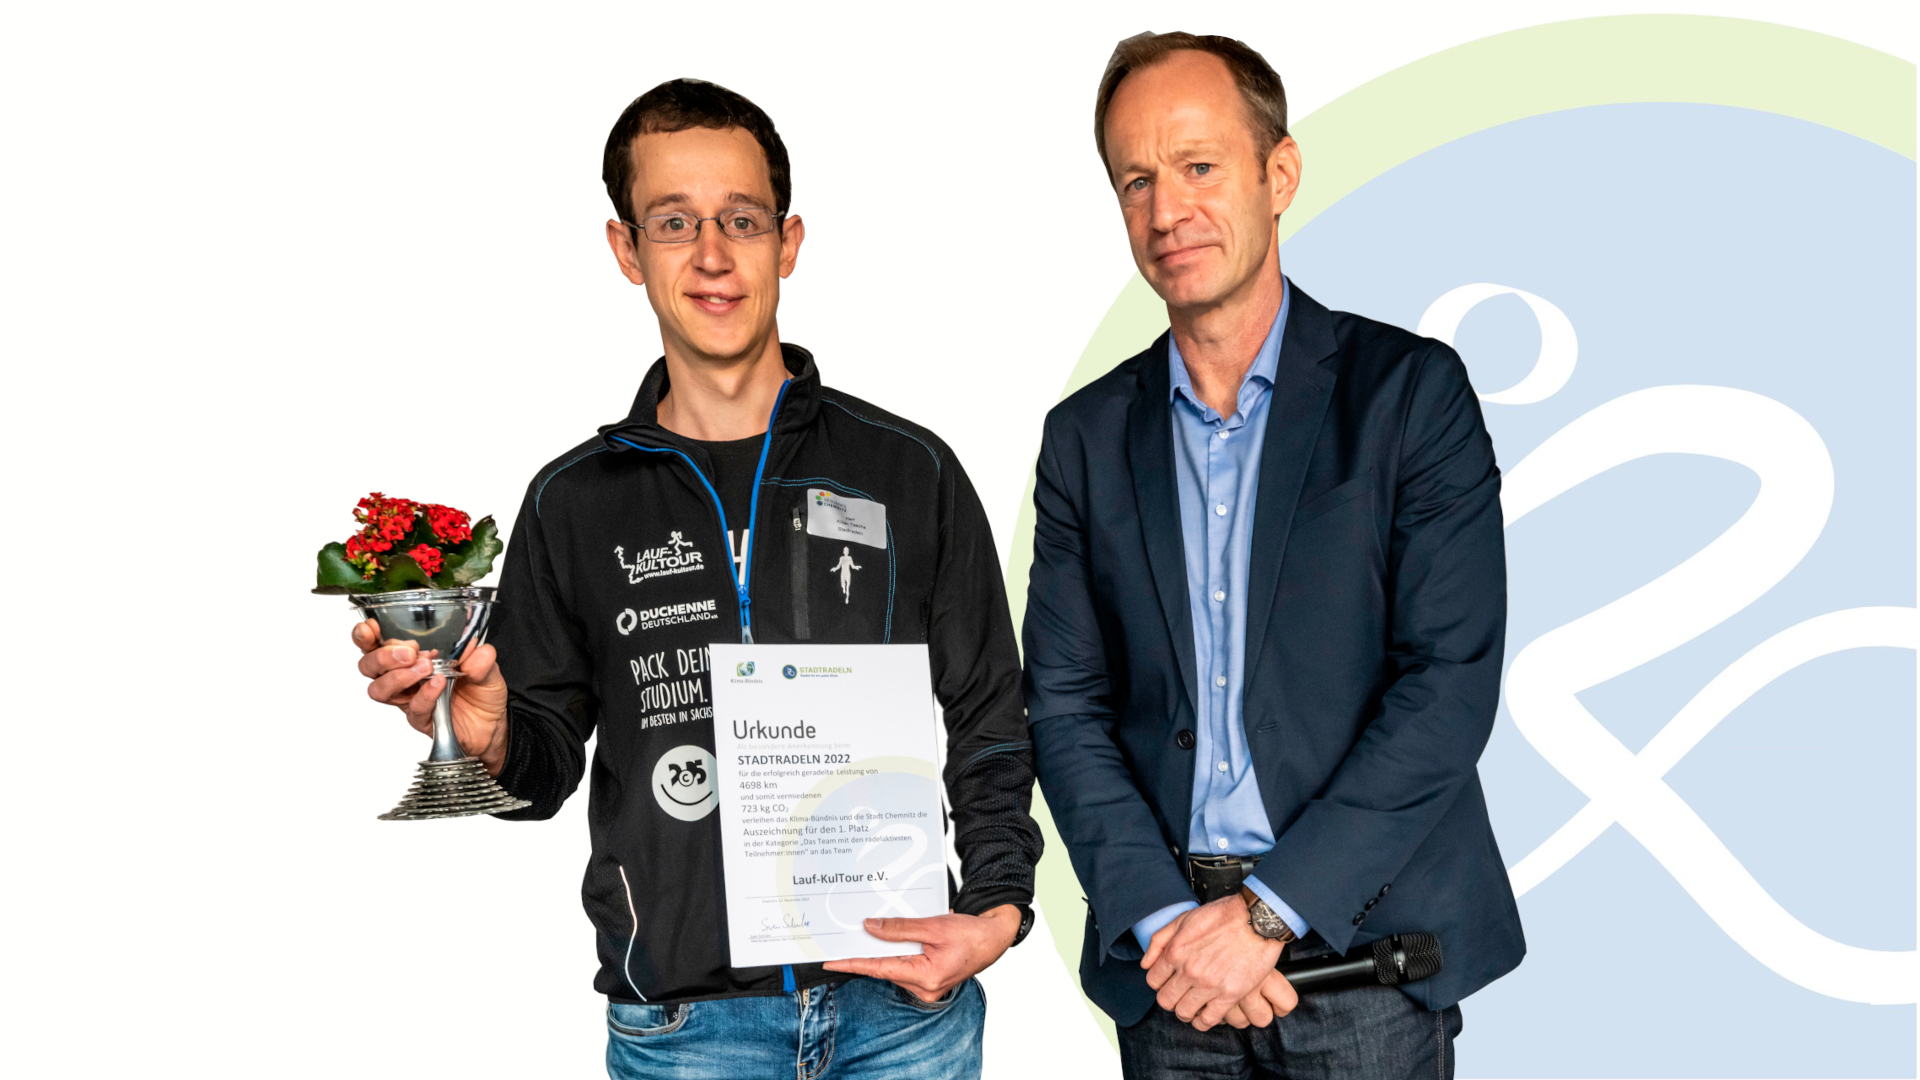 Bürgermeister Knut Kunze überreichte den Preis und die Urkunde an den Vertreter des Teams Lauf-KulTour e. V. als Team mit den radelaktivsten Teilnehmer:innen